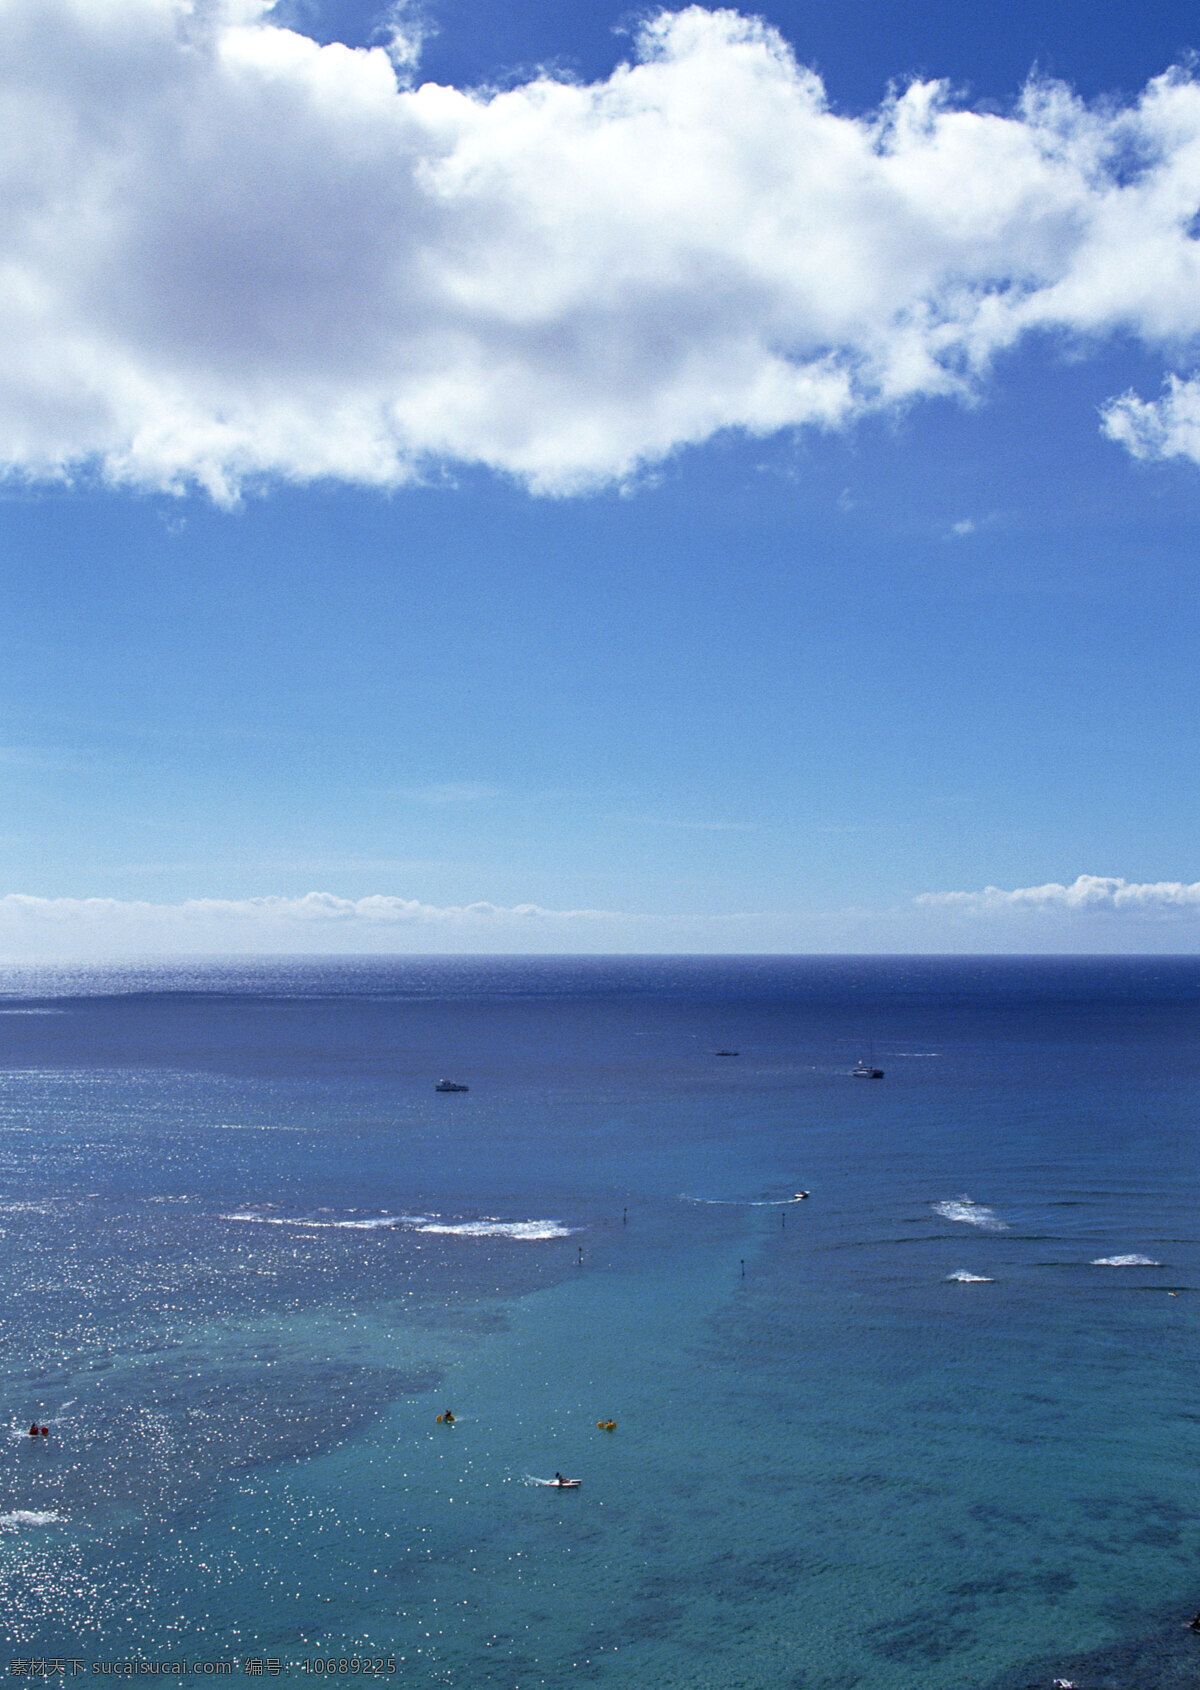 大海 全景 旅游 风景区 夏威夷 夏威夷风光 悠闲 假日 碧海蓝天 美境 大海图片 风景图片